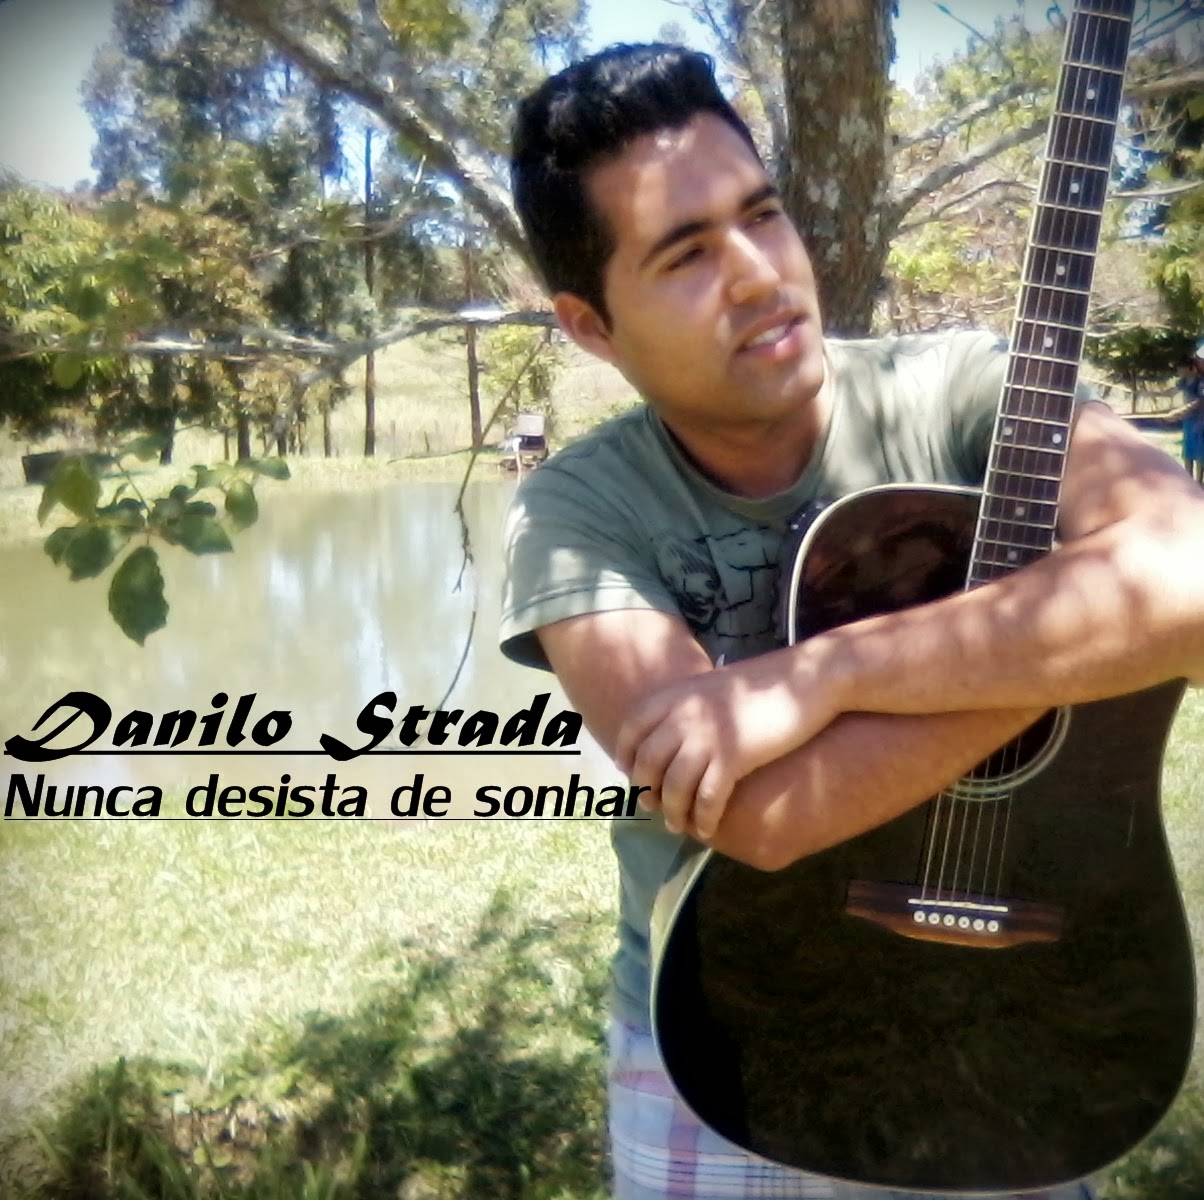 Adquira o novo CD de Danilo Strada nunca desista de sonhar pelo email miandanilomusica@gmail.com